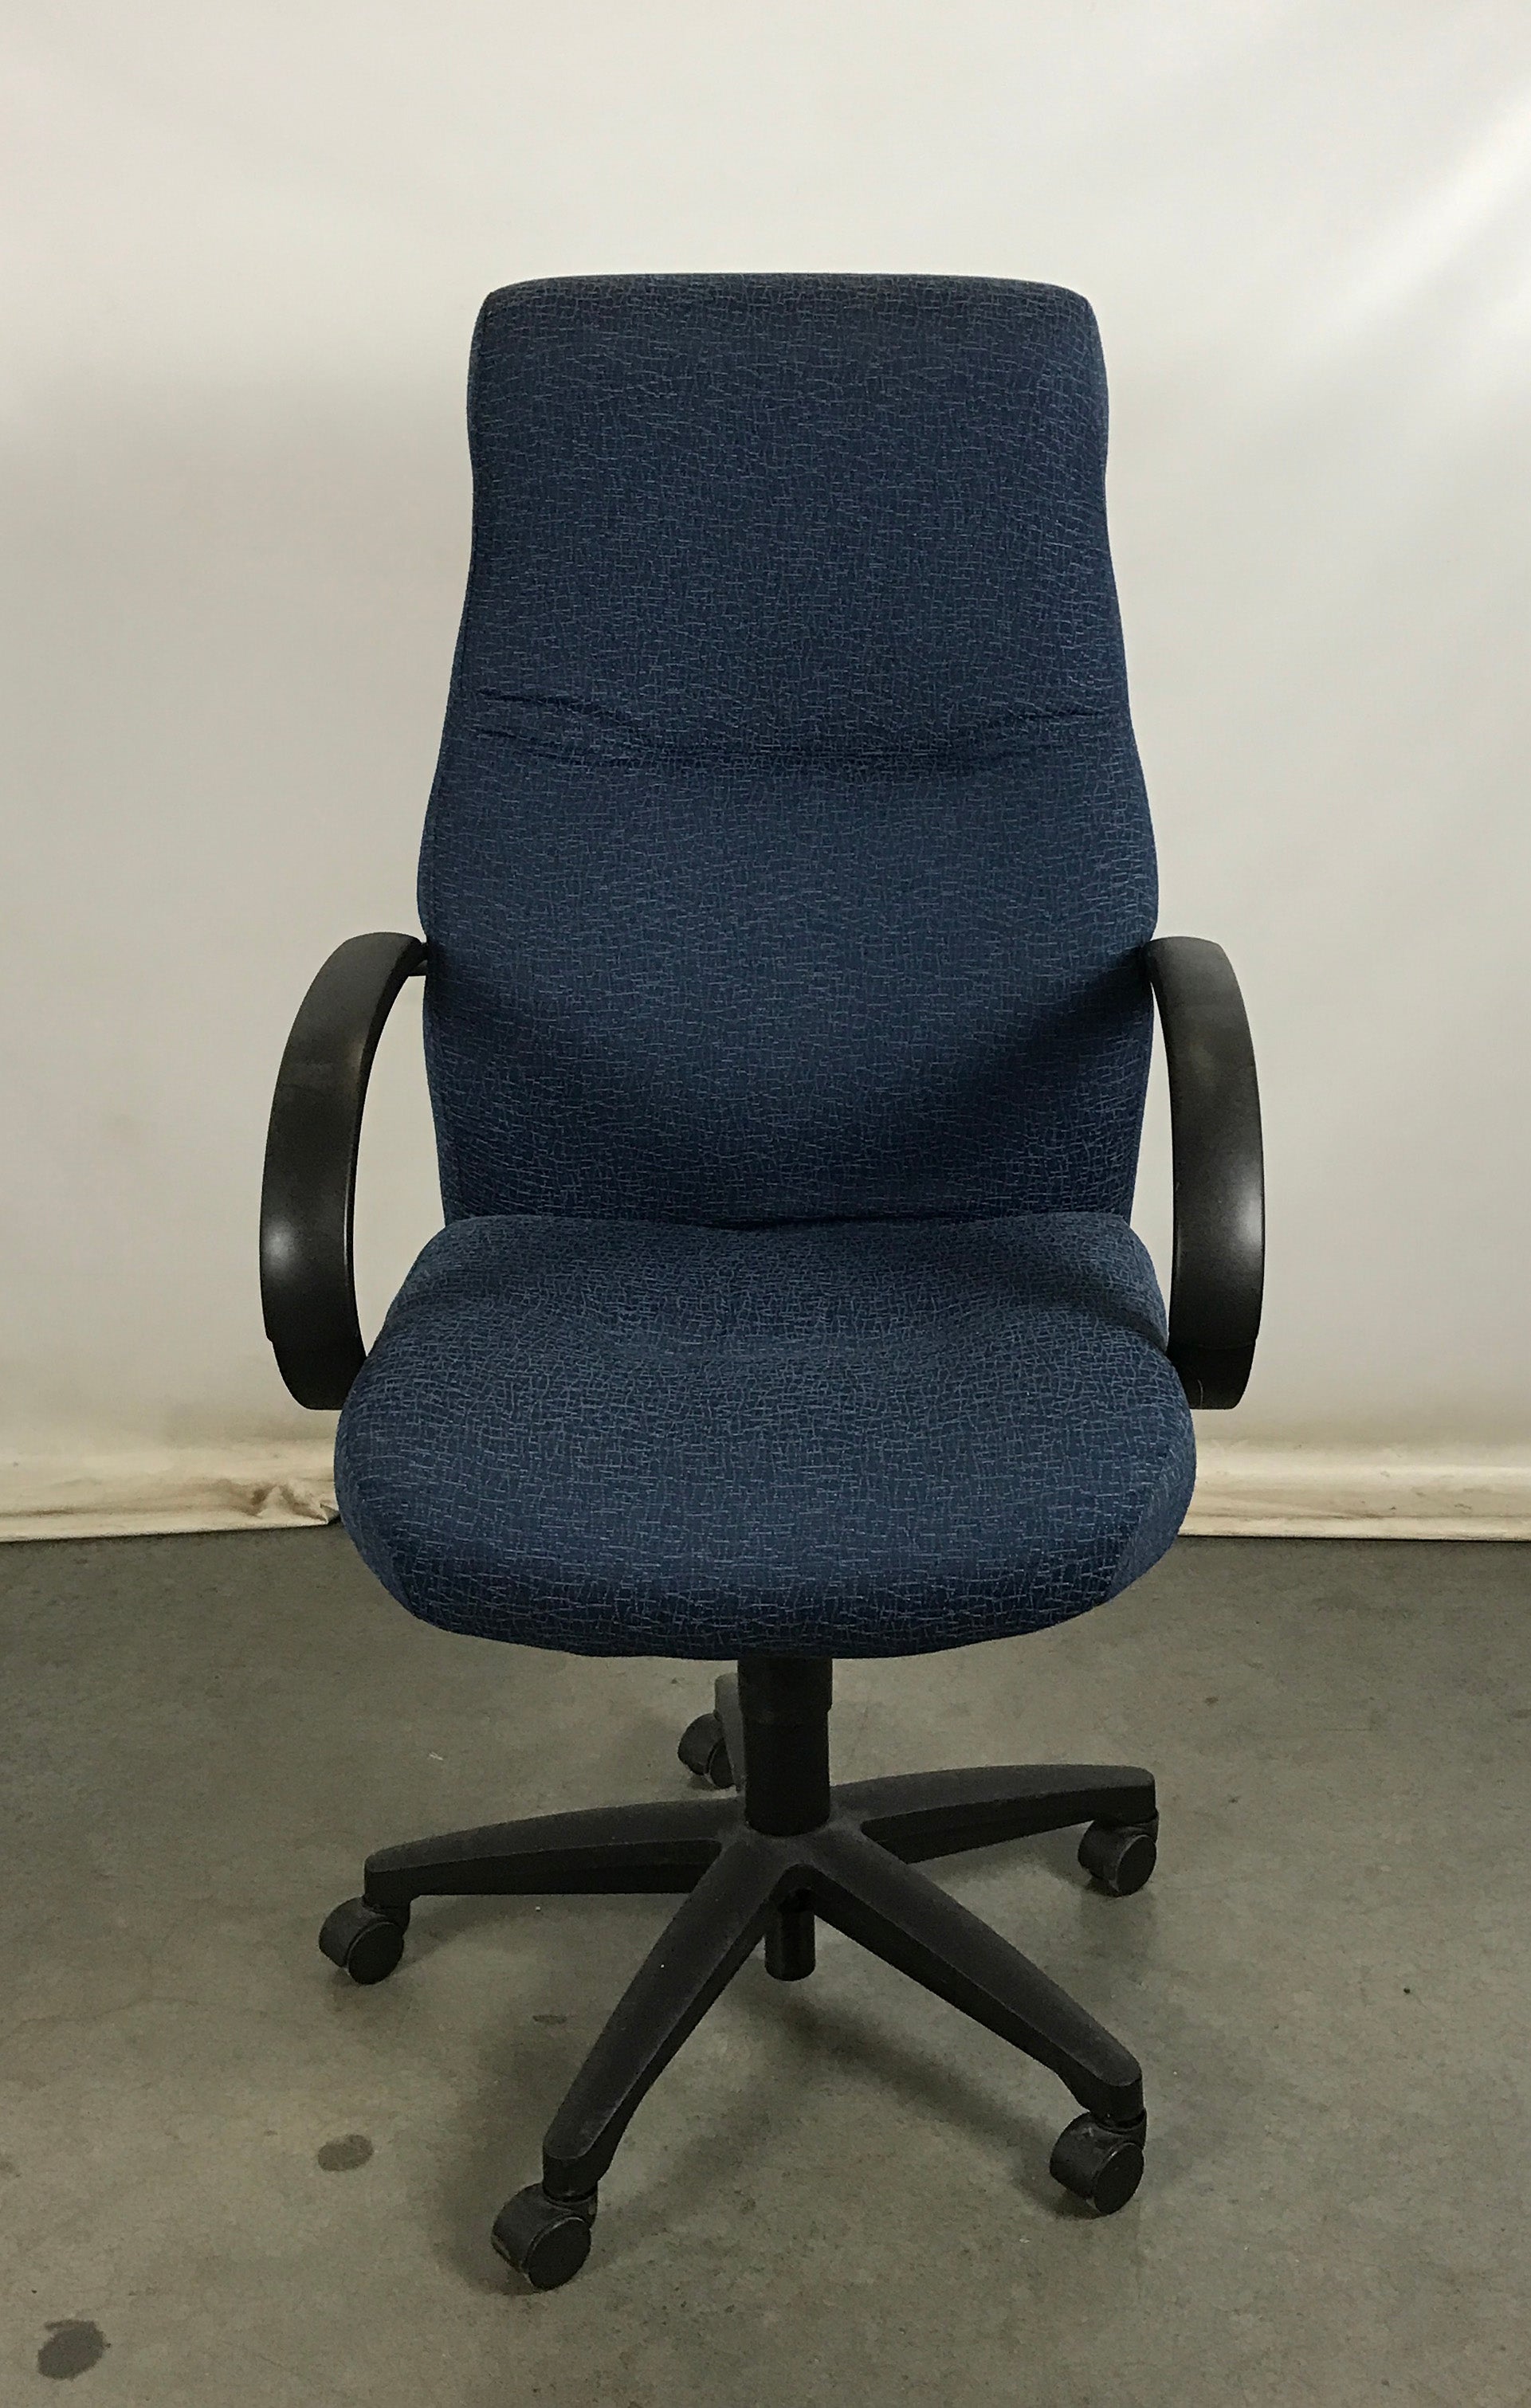 Hon Blue Desk Chair